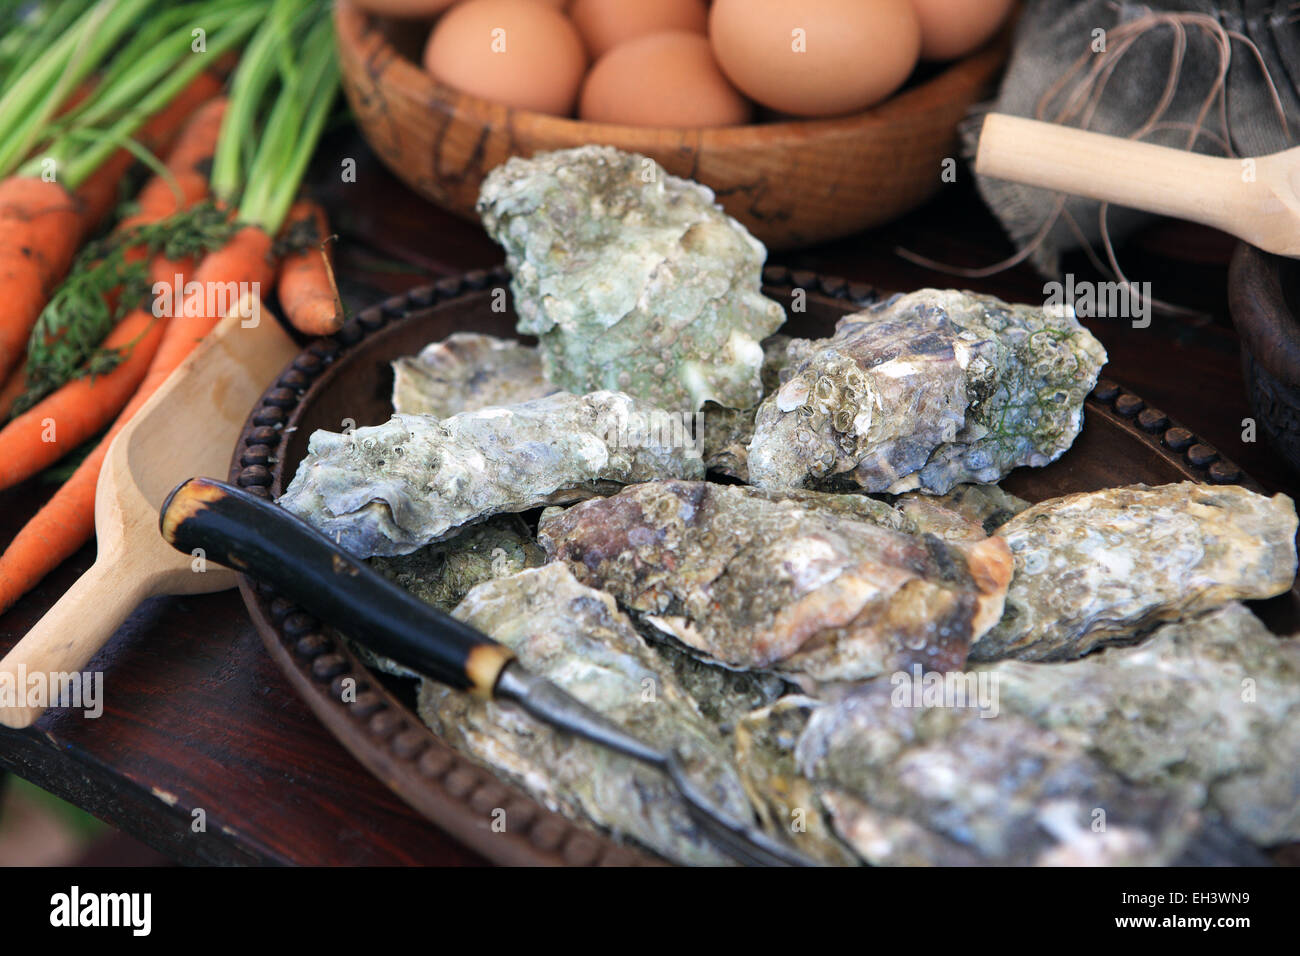 Les huîtres sur une table dans le cadre d'un exemple de l'alimentation médiévale Banque D'Images